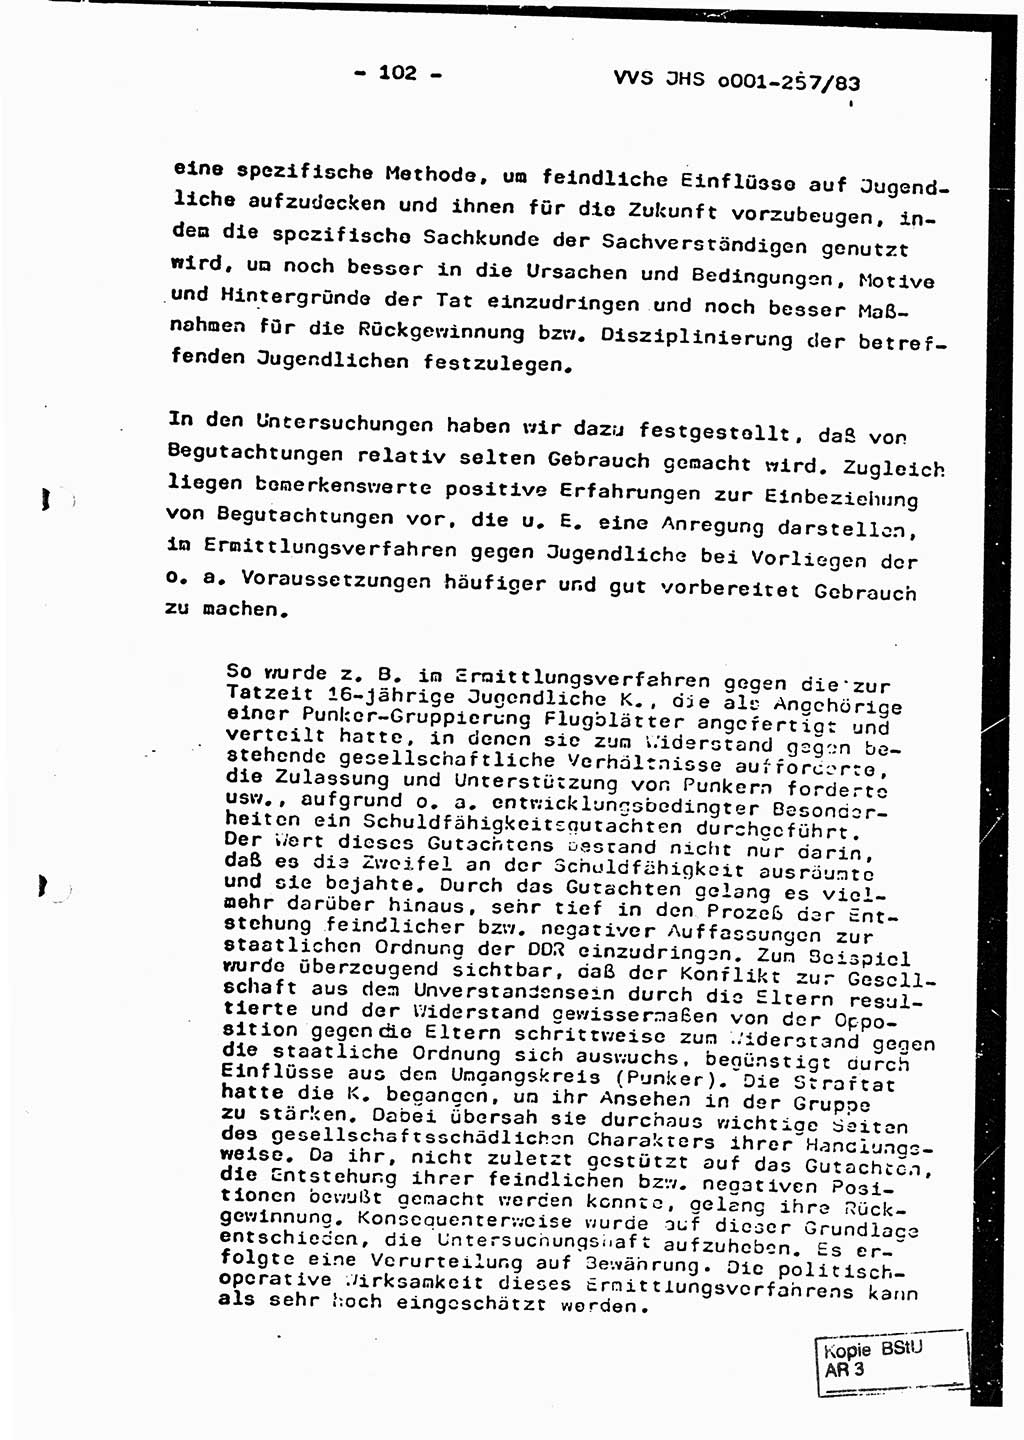 Dissertation, Oberst Helmut Lubas (BV Mdg.), Oberstleutnant Manfred Eschberger (HA IX), Oberleutnant Hans-Jürgen Ludwig (JHS), Ministerium für Staatssicherheit (MfS) [Deutsche Demokratische Republik (DDR)], Juristische Hochschule (JHS), Vertrauliche Verschlußsache (VVS) o001-257/83, Potsdam 1983, Seite 102 (Diss. MfS DDR JHS VVS o001-257/83 1983, S. 102)